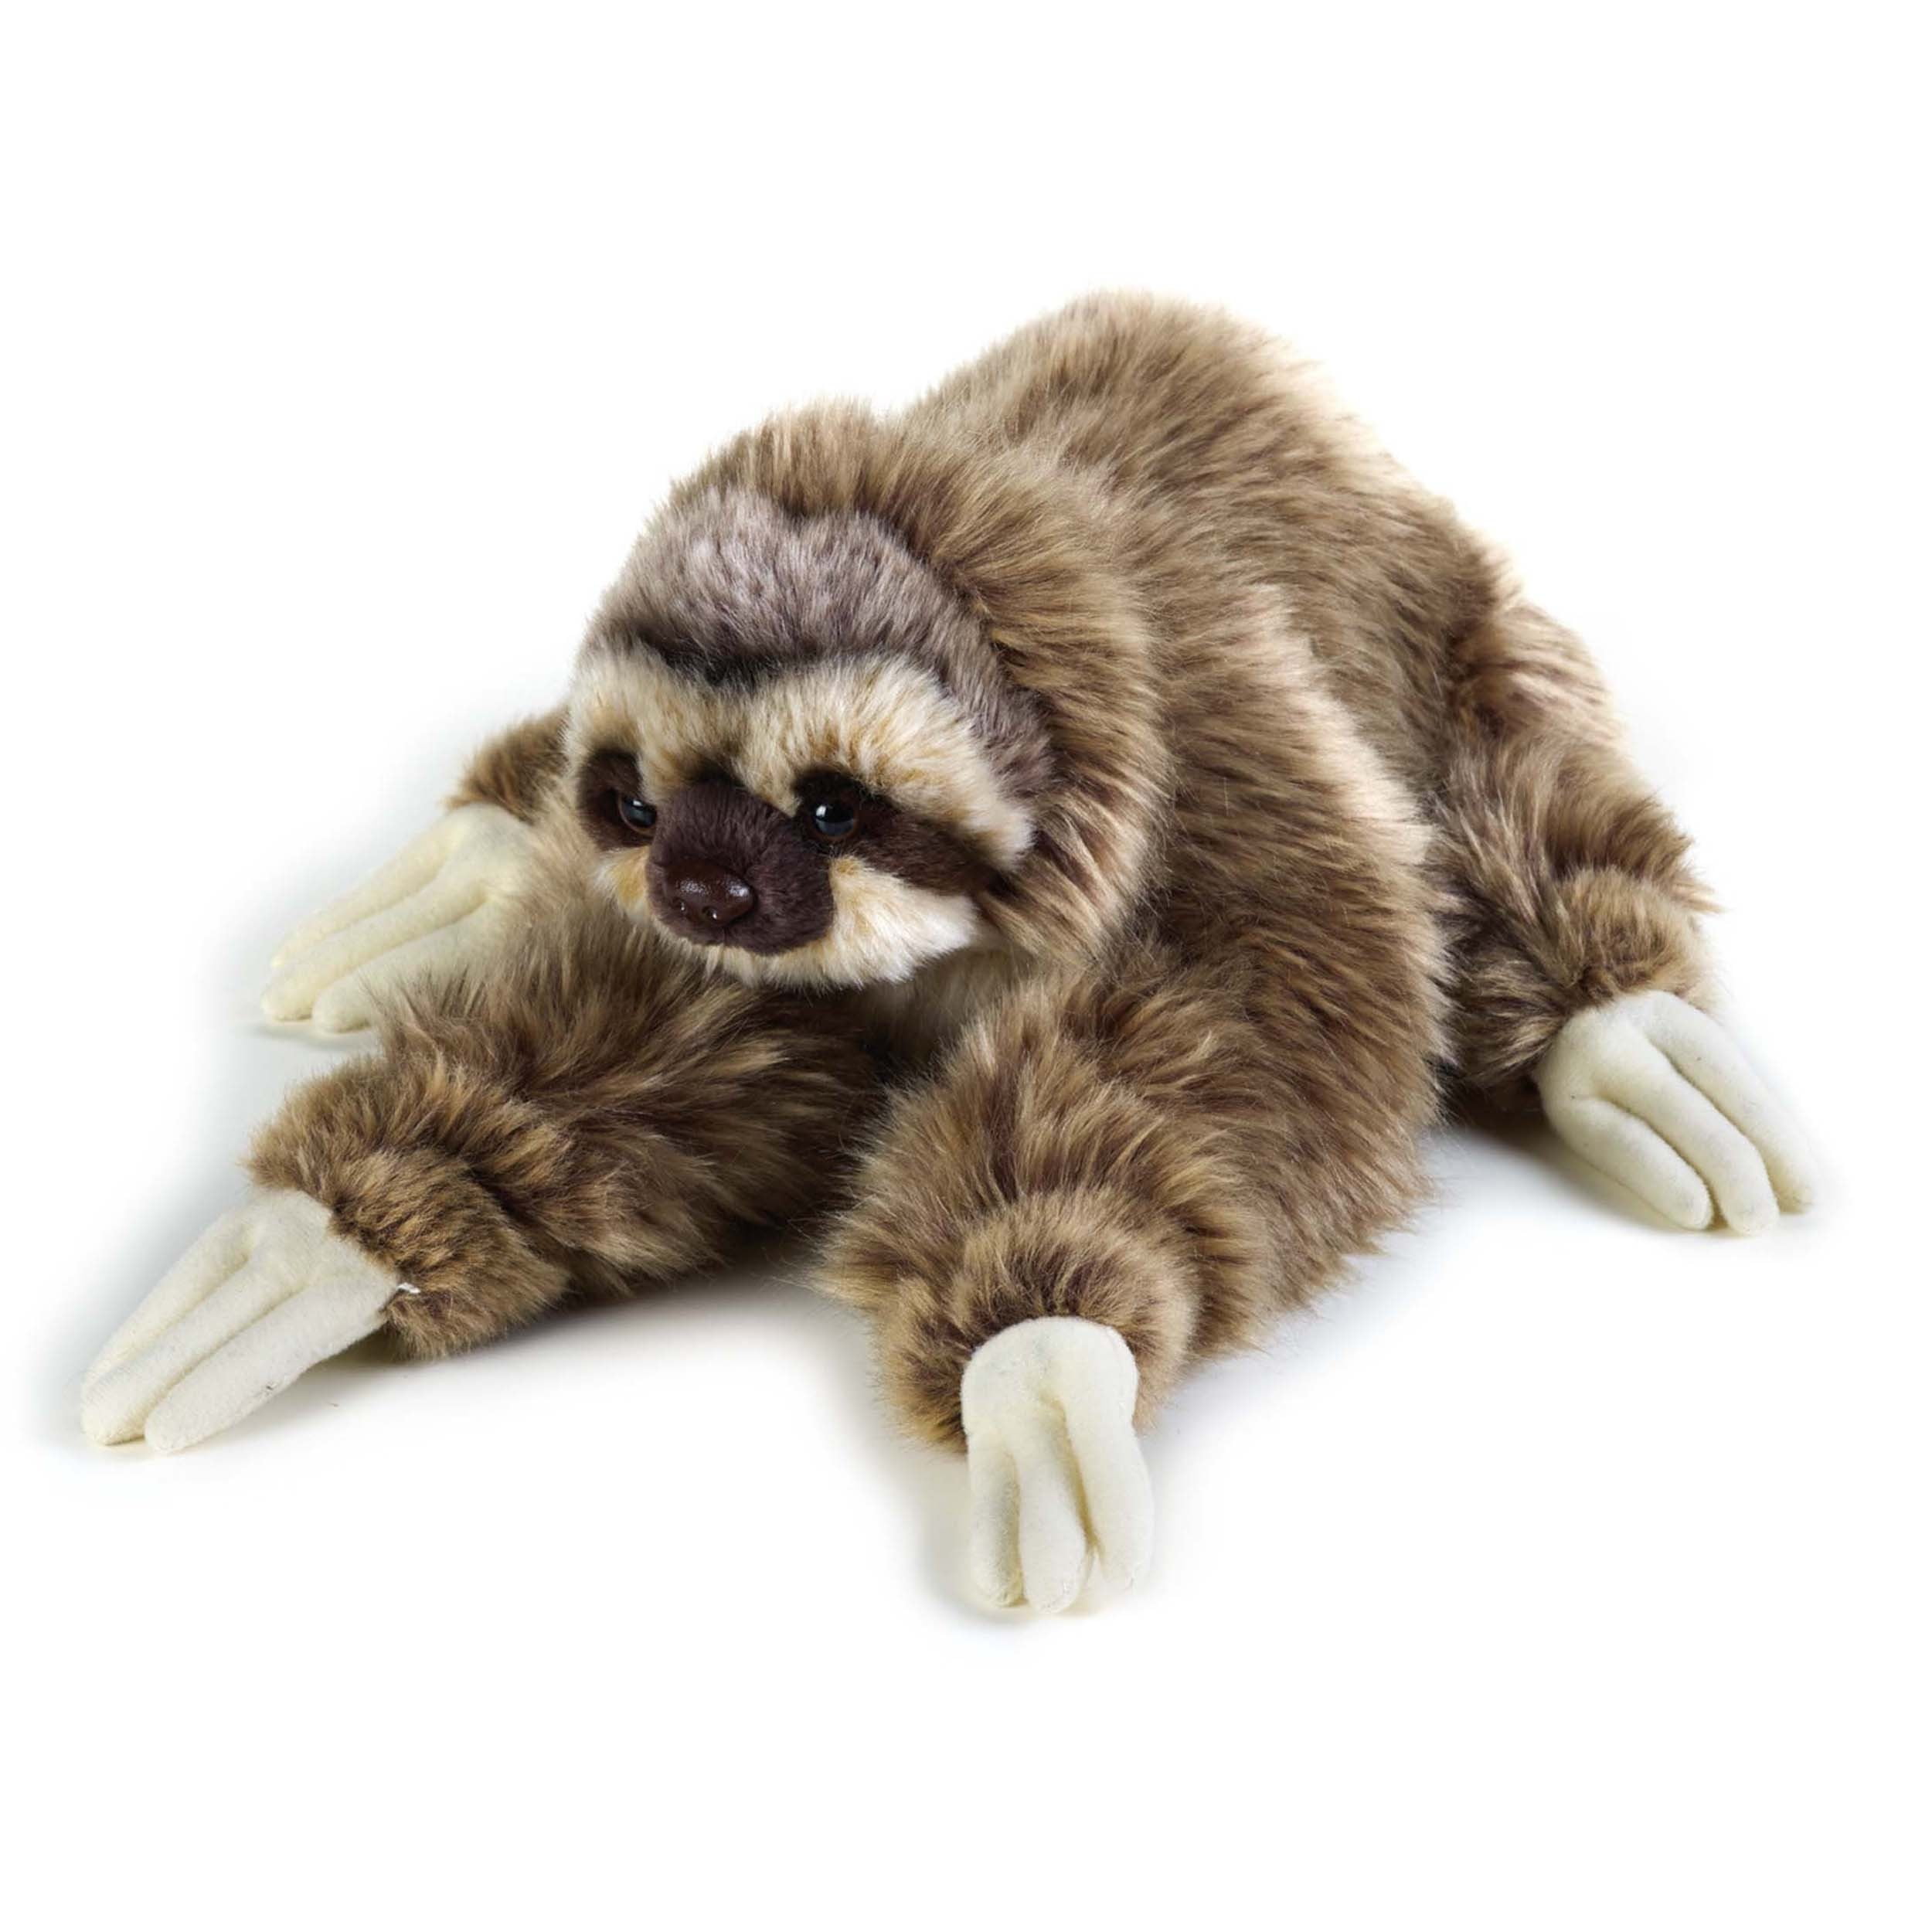 TAMMYFLYFLY Cute Realistic Three Toed Sloth Plush Stuffed Animal Toy 12inch